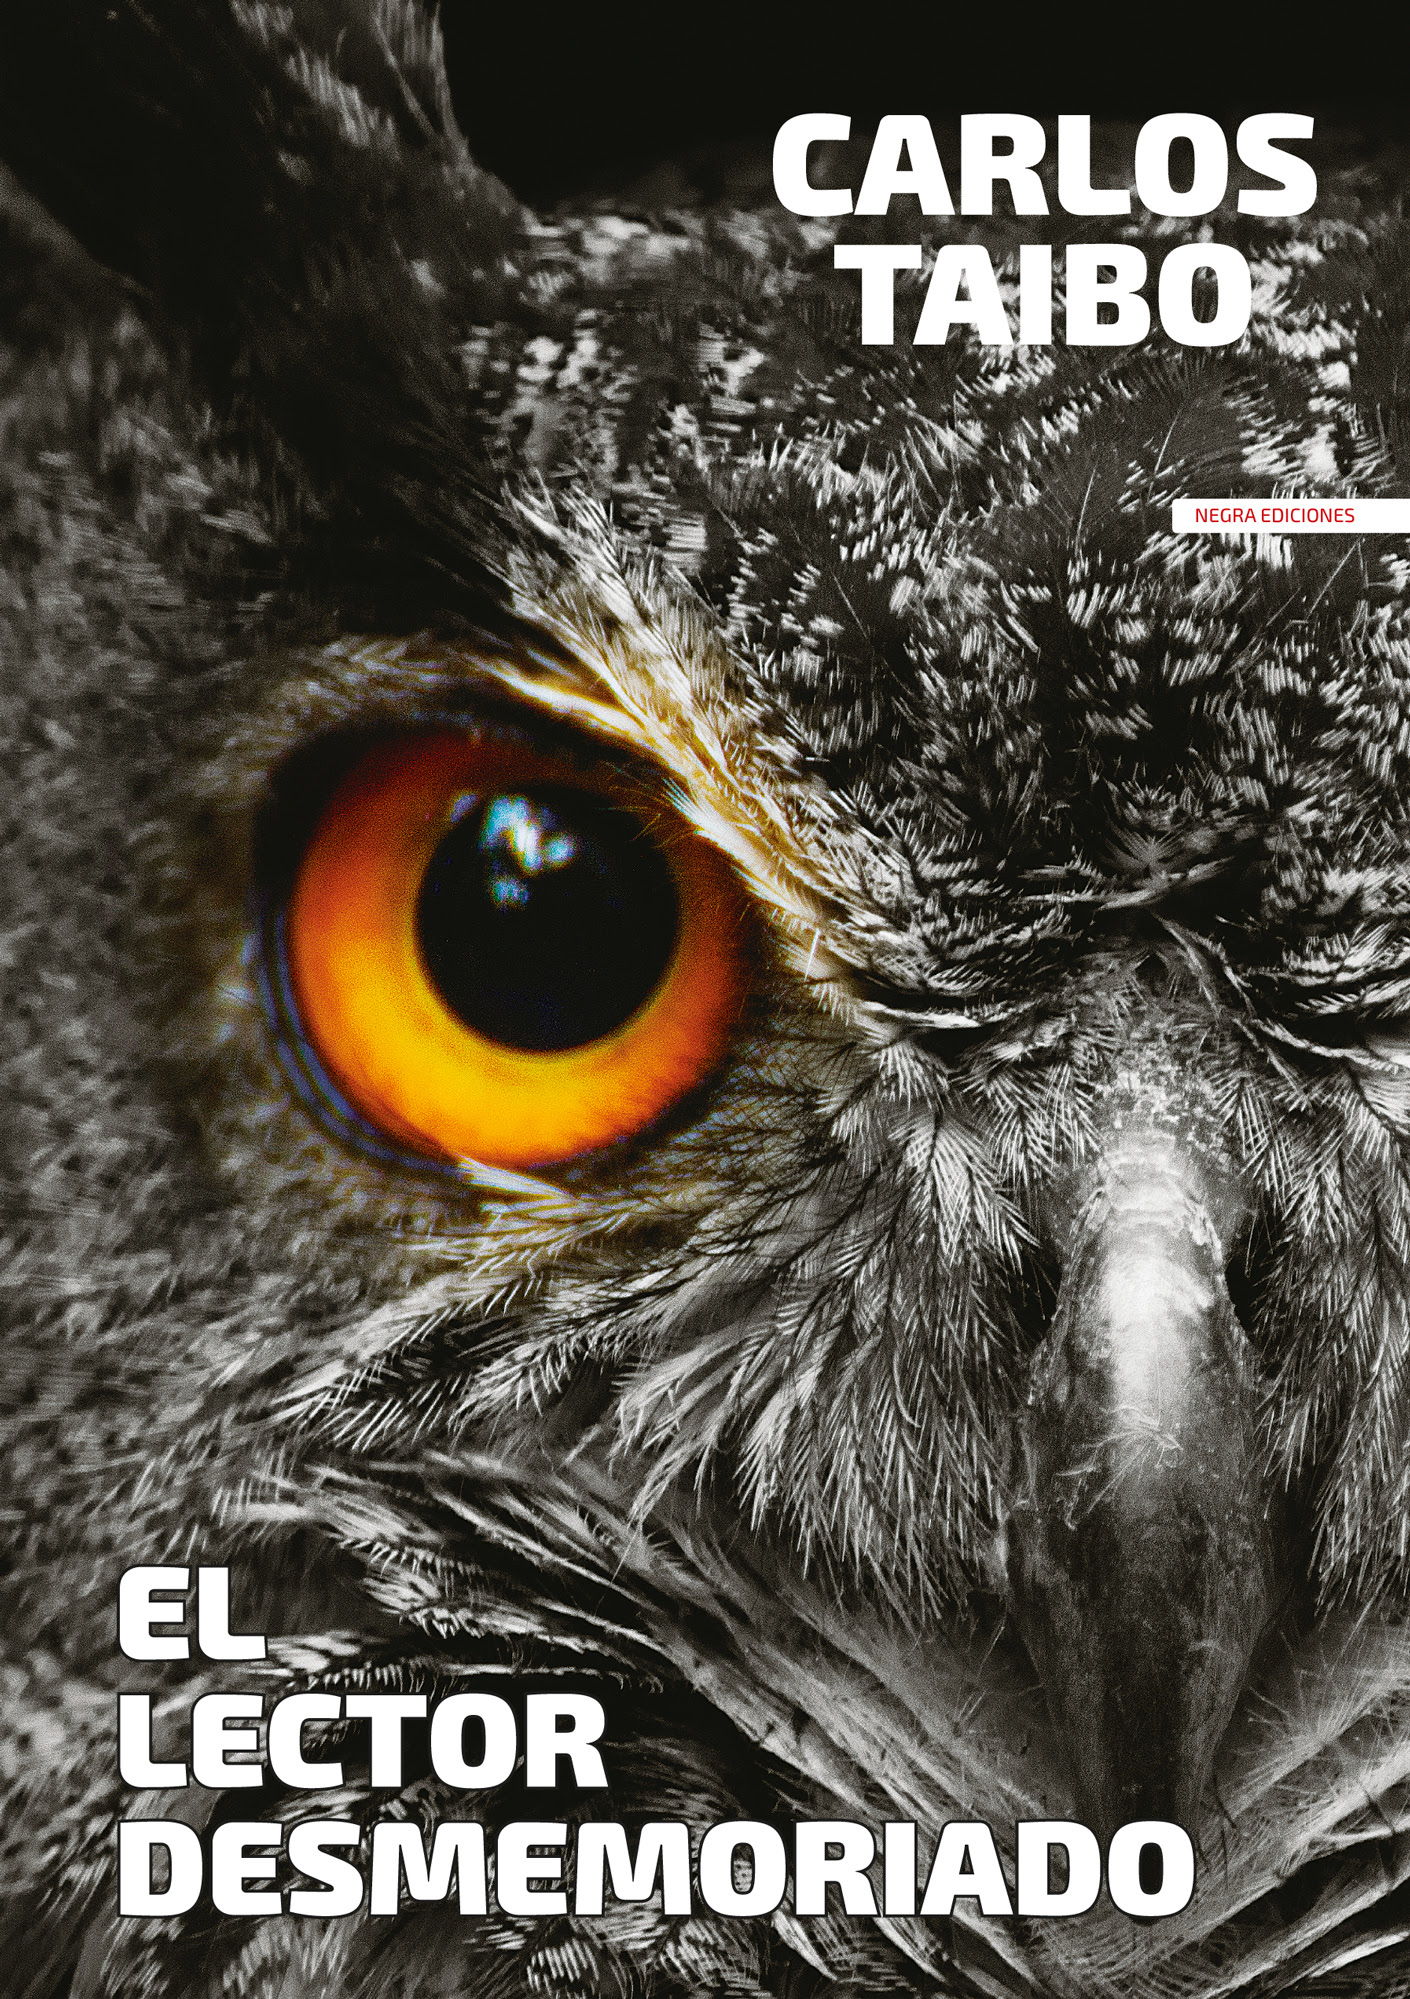 CARLOS TAIBO presenta y firma 'El lector desmemoriado' (Negra ediciones)